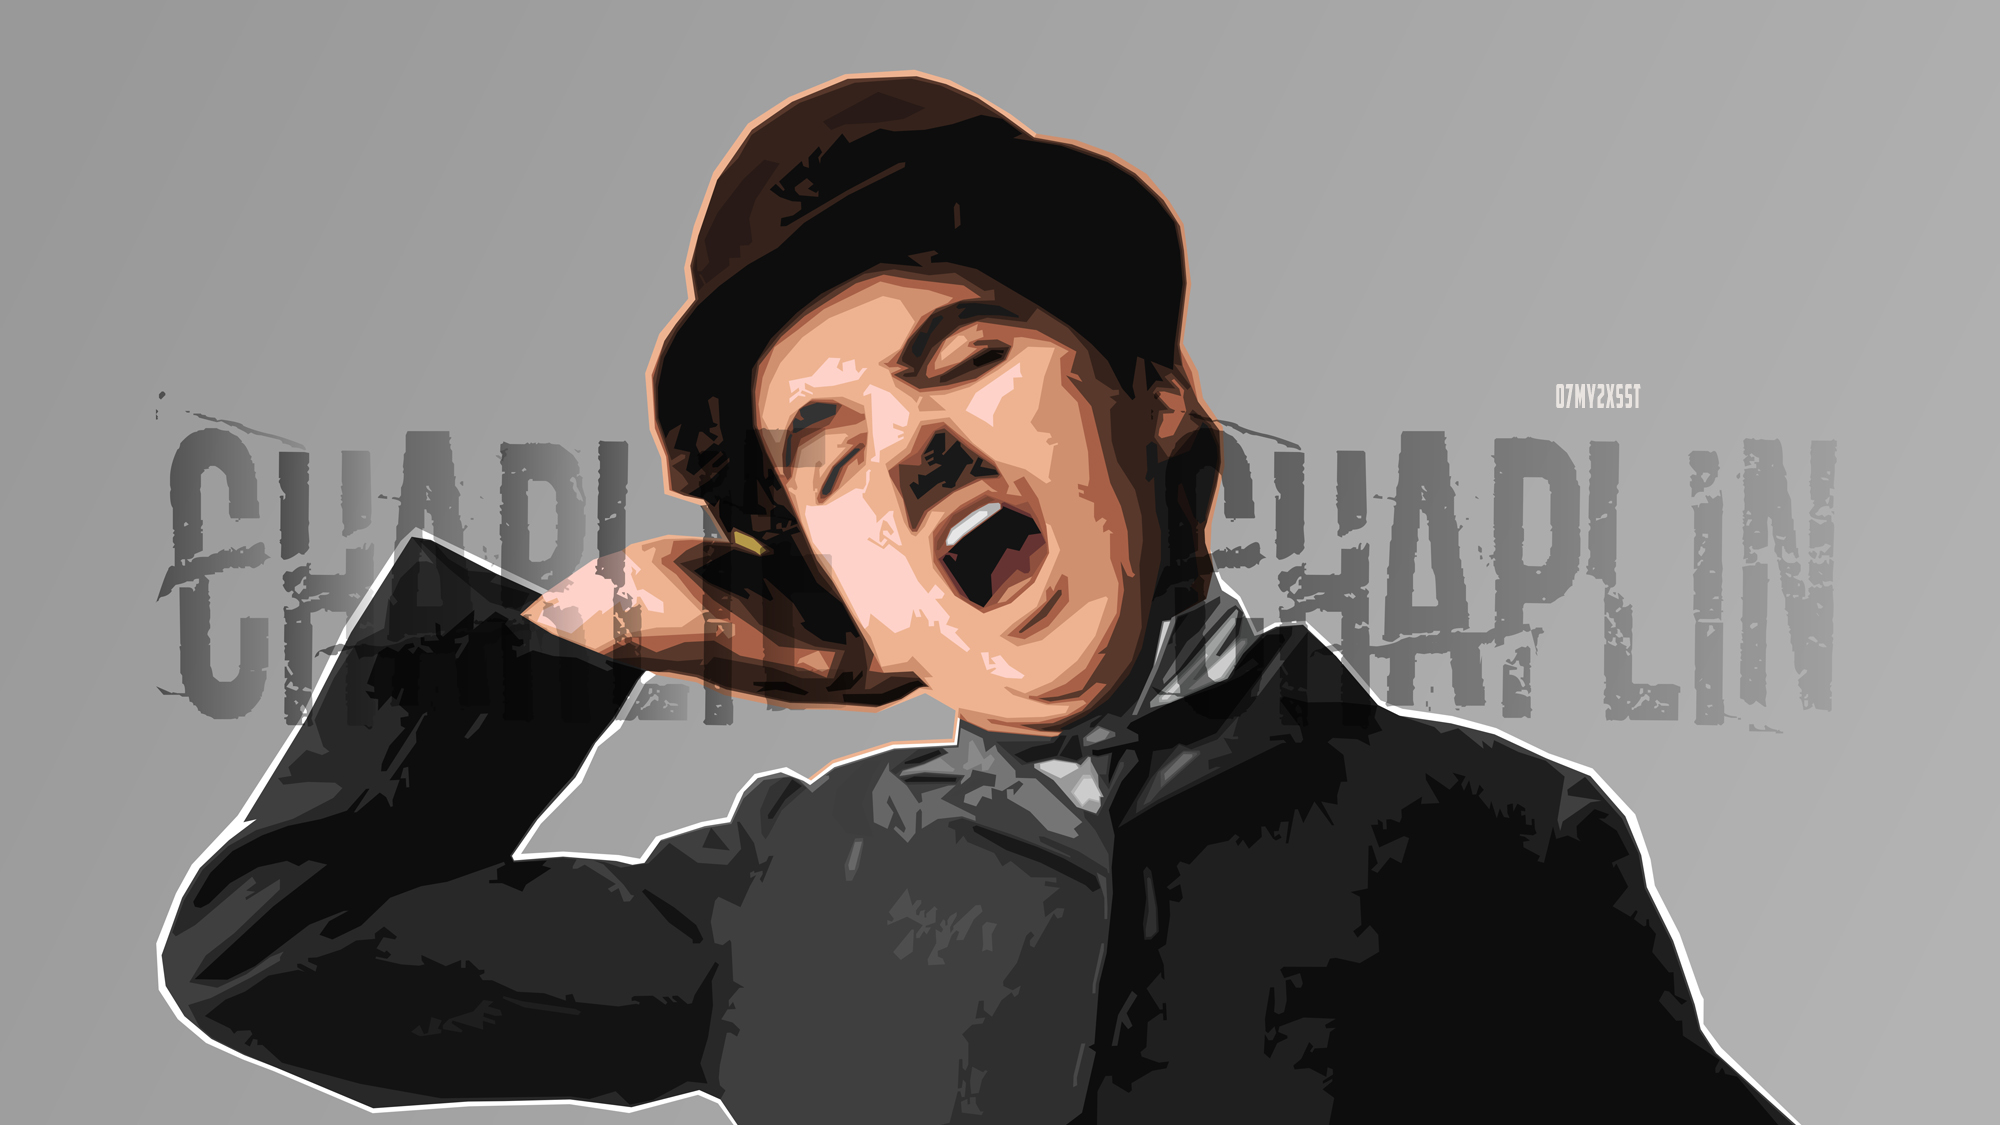 Charlie Chaplin HD Wallpaper by zelko